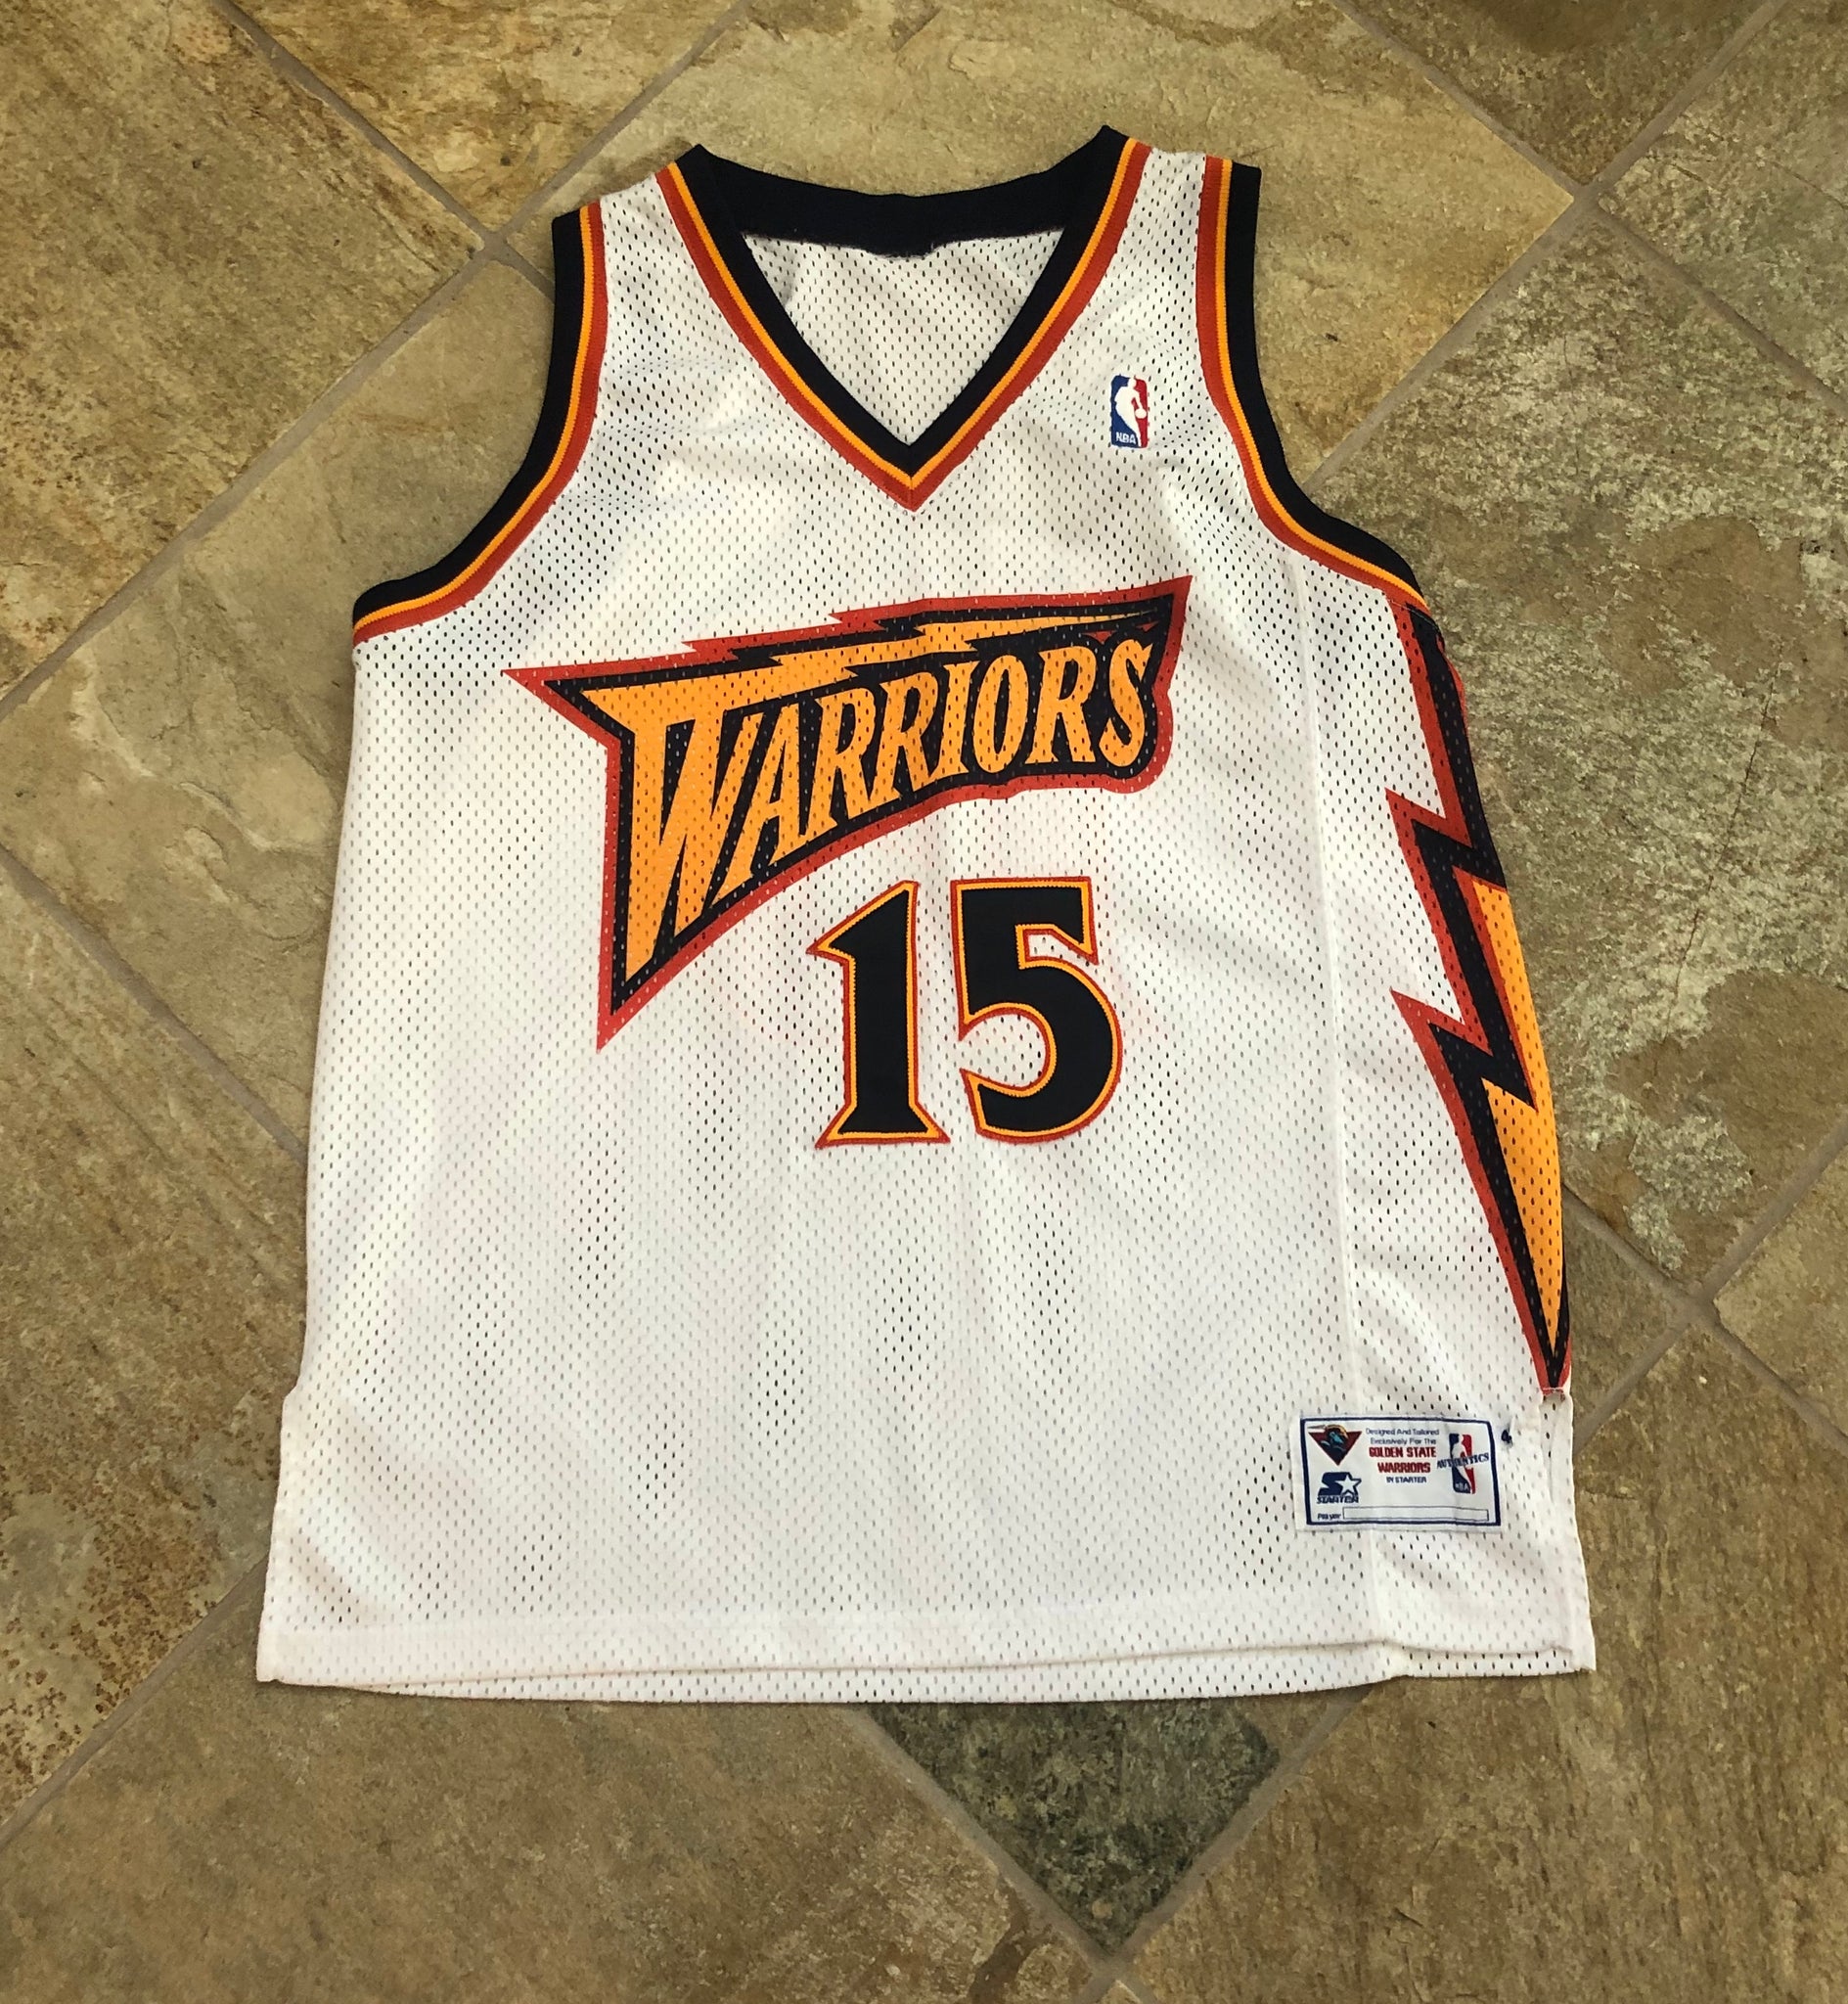 Starter Golden State Warriors NBA Jerseys for sale